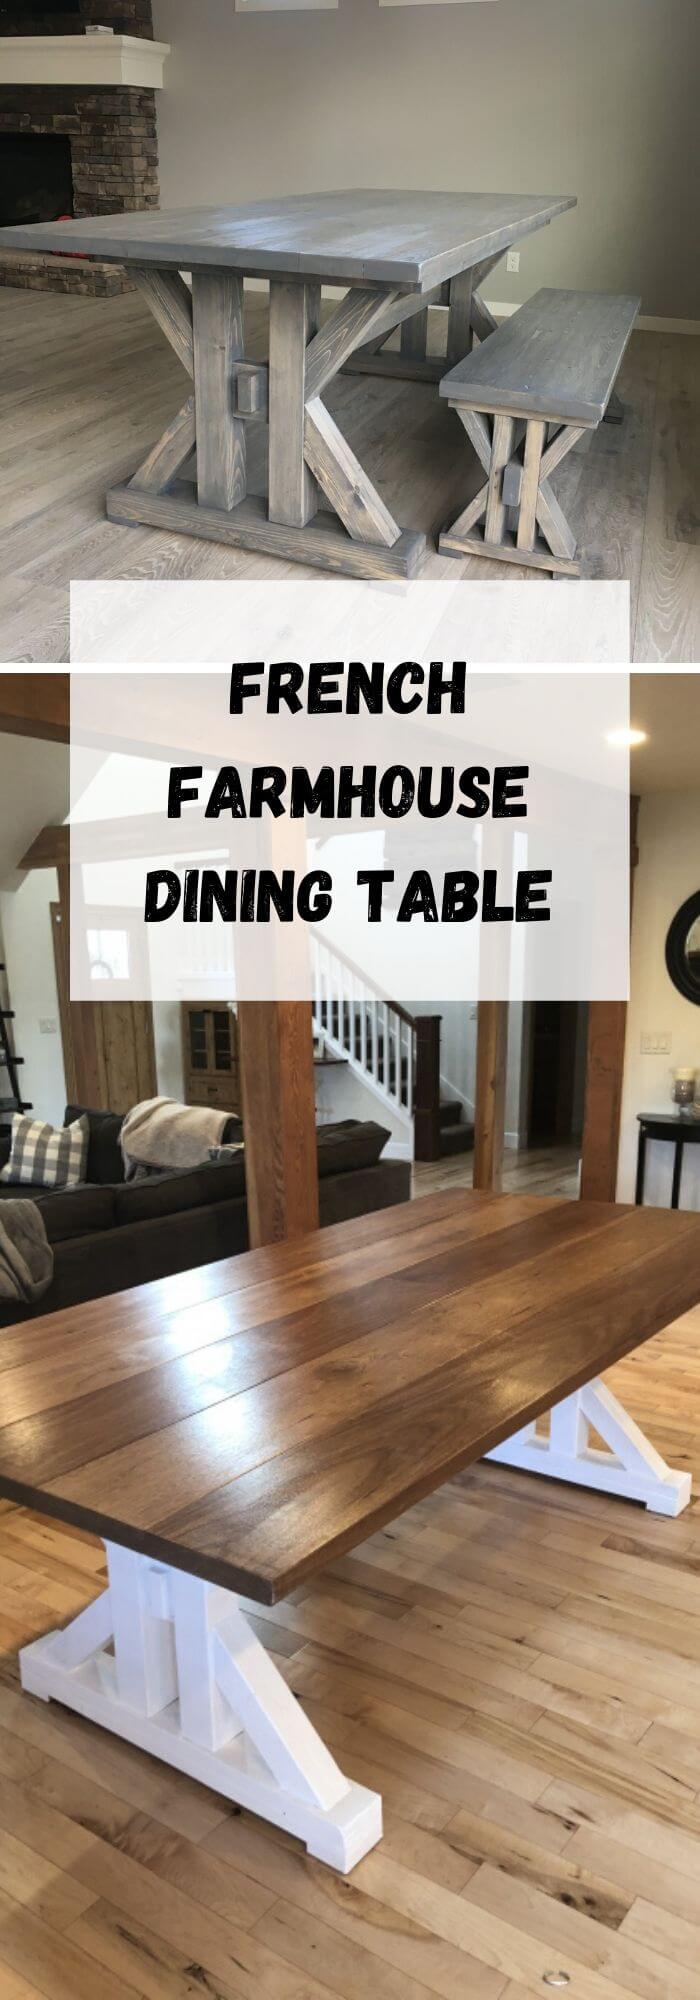 10 farmhouse table ideas